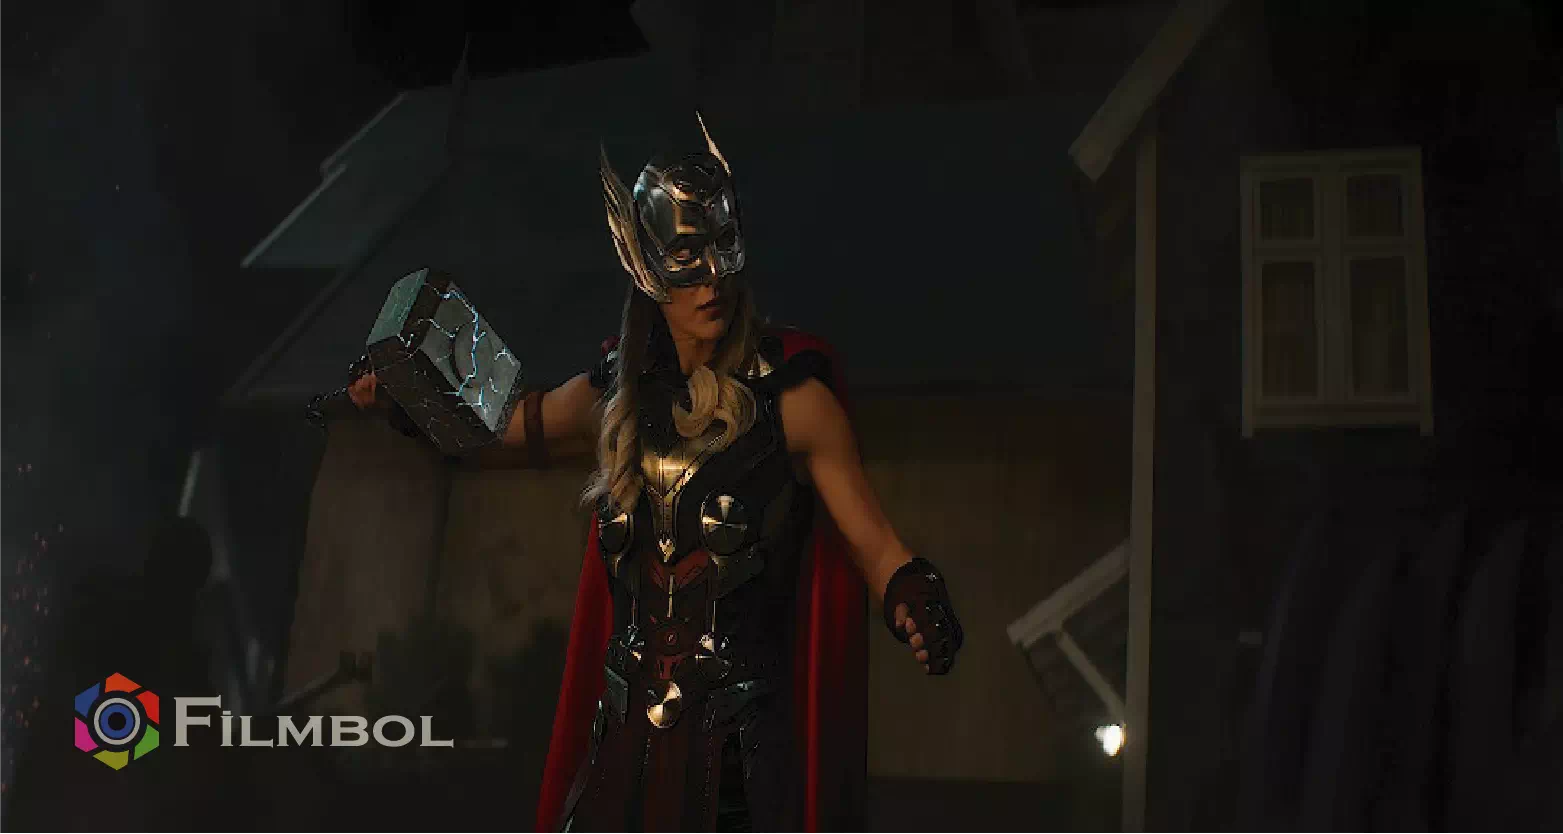 Thor: Aşk ve Gök Gürültüsü İndir